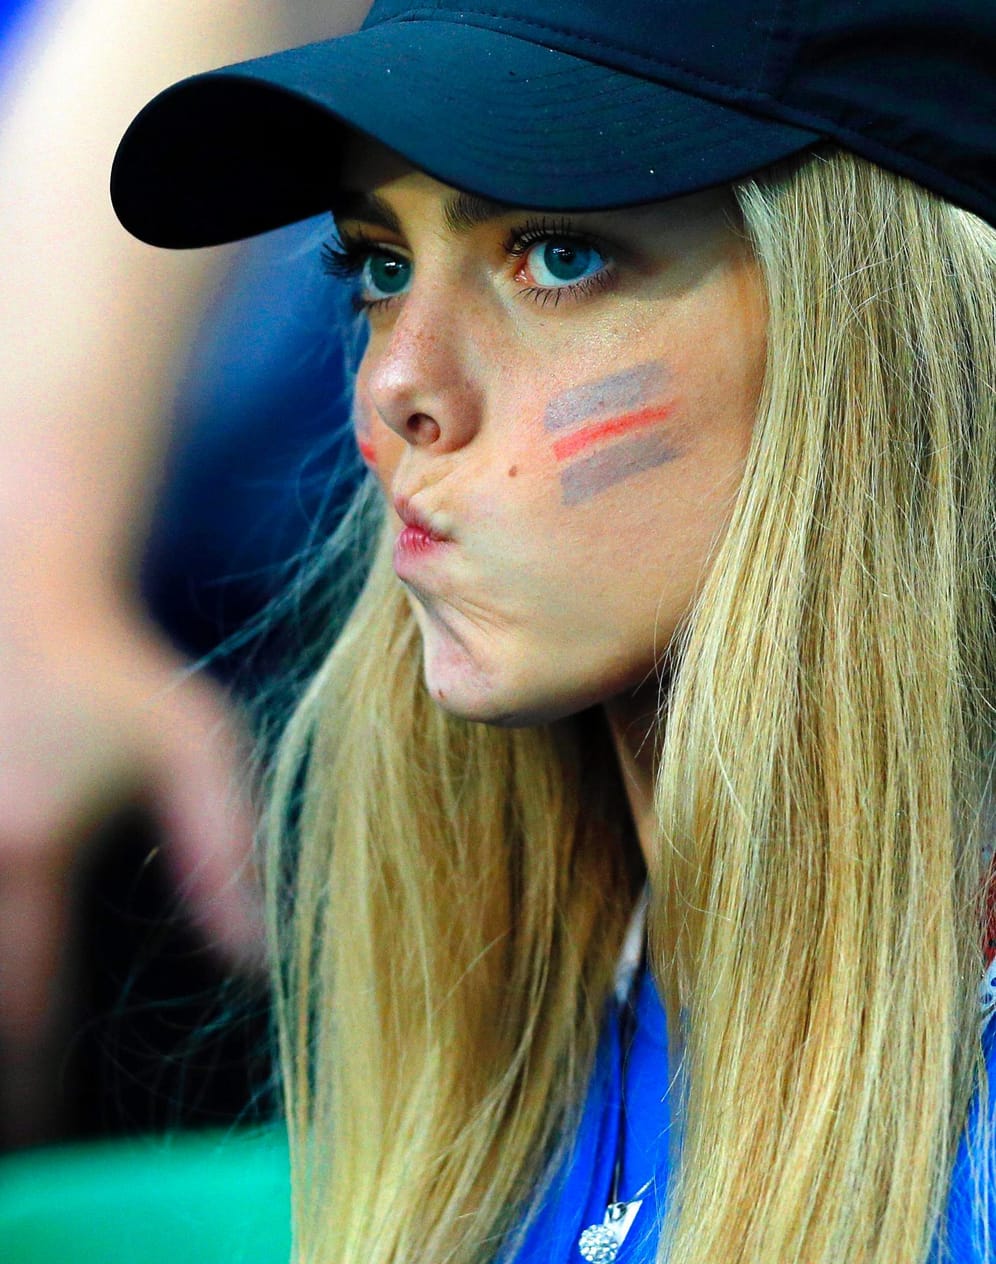 Und noch ein weiblicher Island-Fan. Noch schaut sie etwas skeptisch. Aber nach dem Abpfiff dürfte sich die Miene aufgehellt haben. Außenseiter Island spielte 1:1 gegen Portugal.